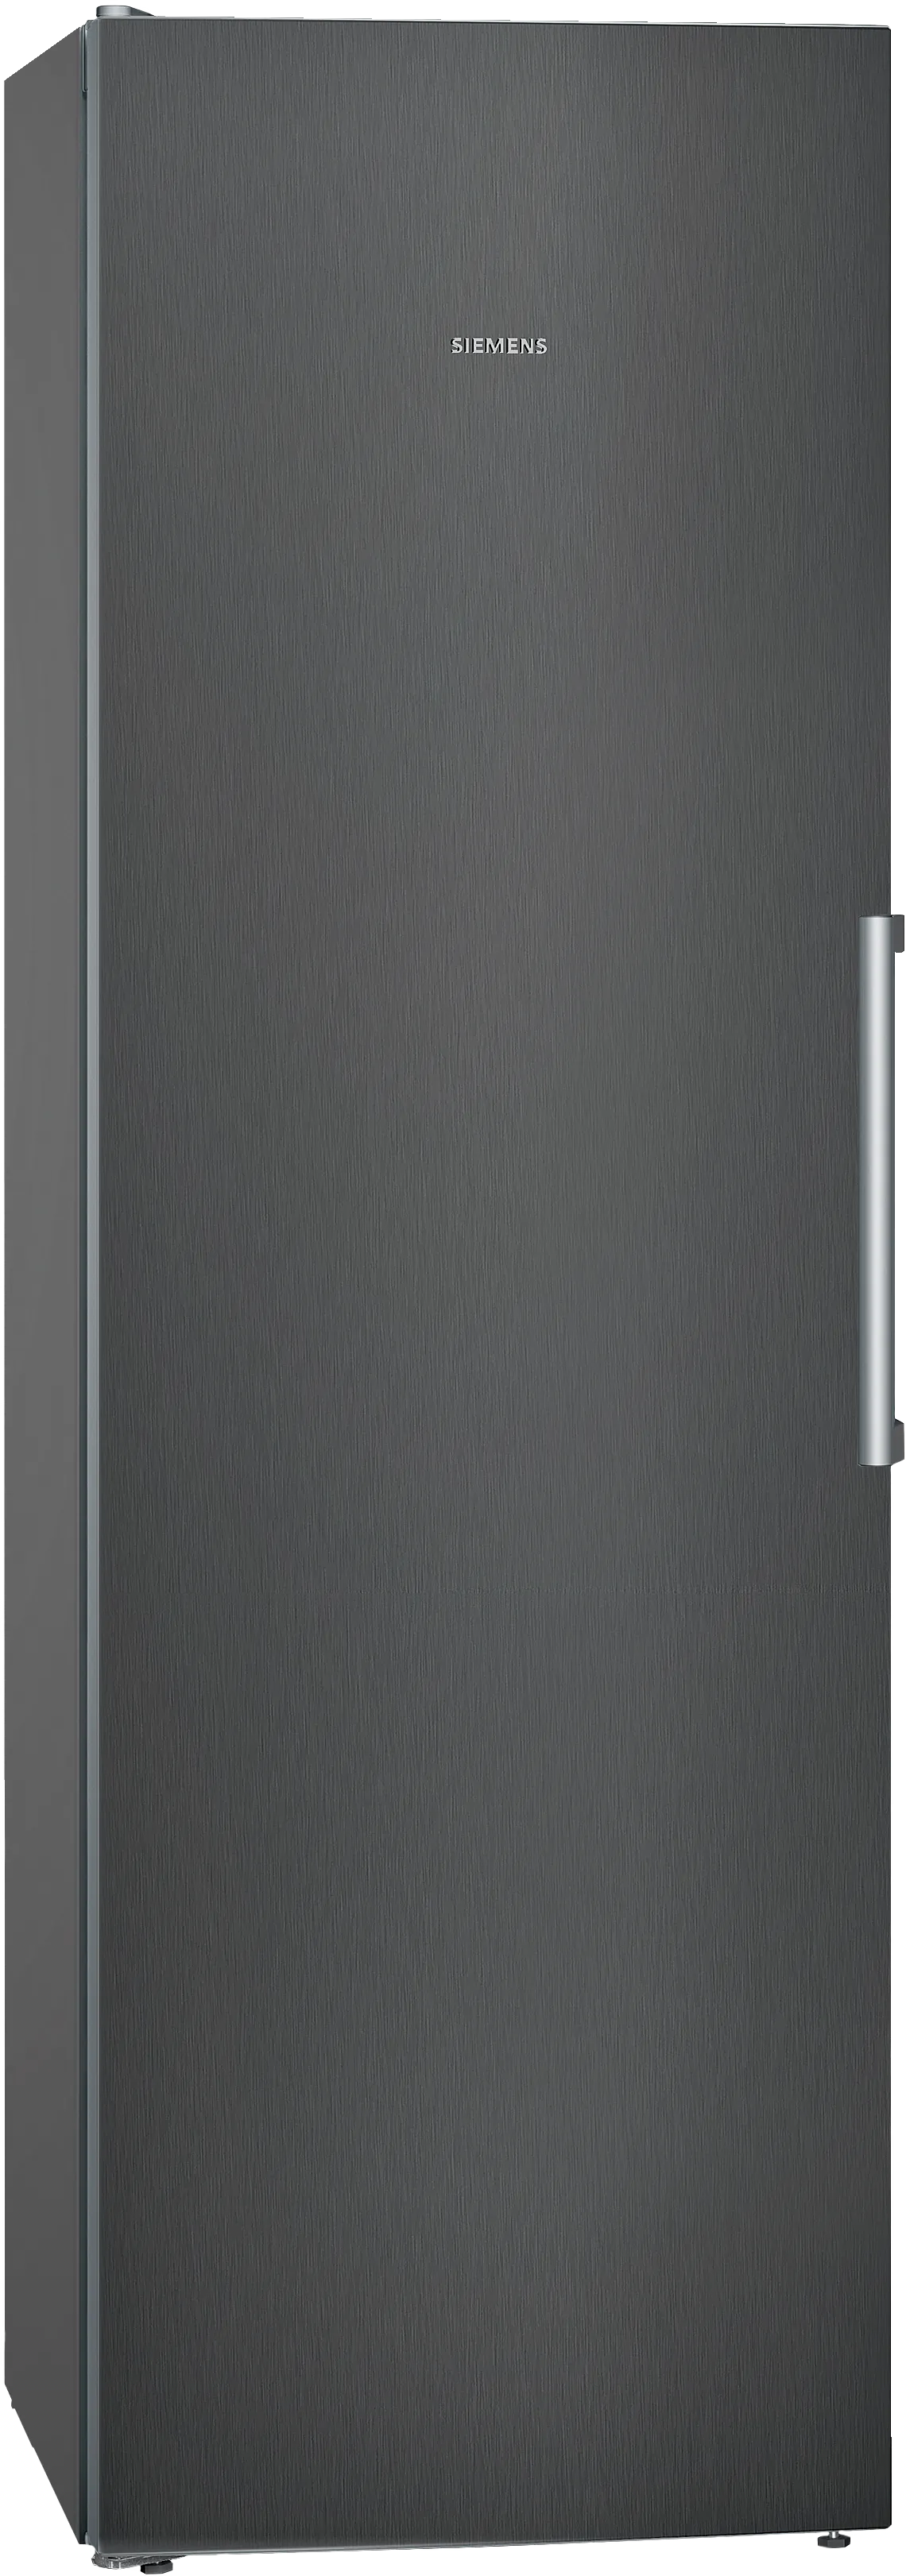 iQ300 Jääkaappi 186 x 60 cm Musta teräs 